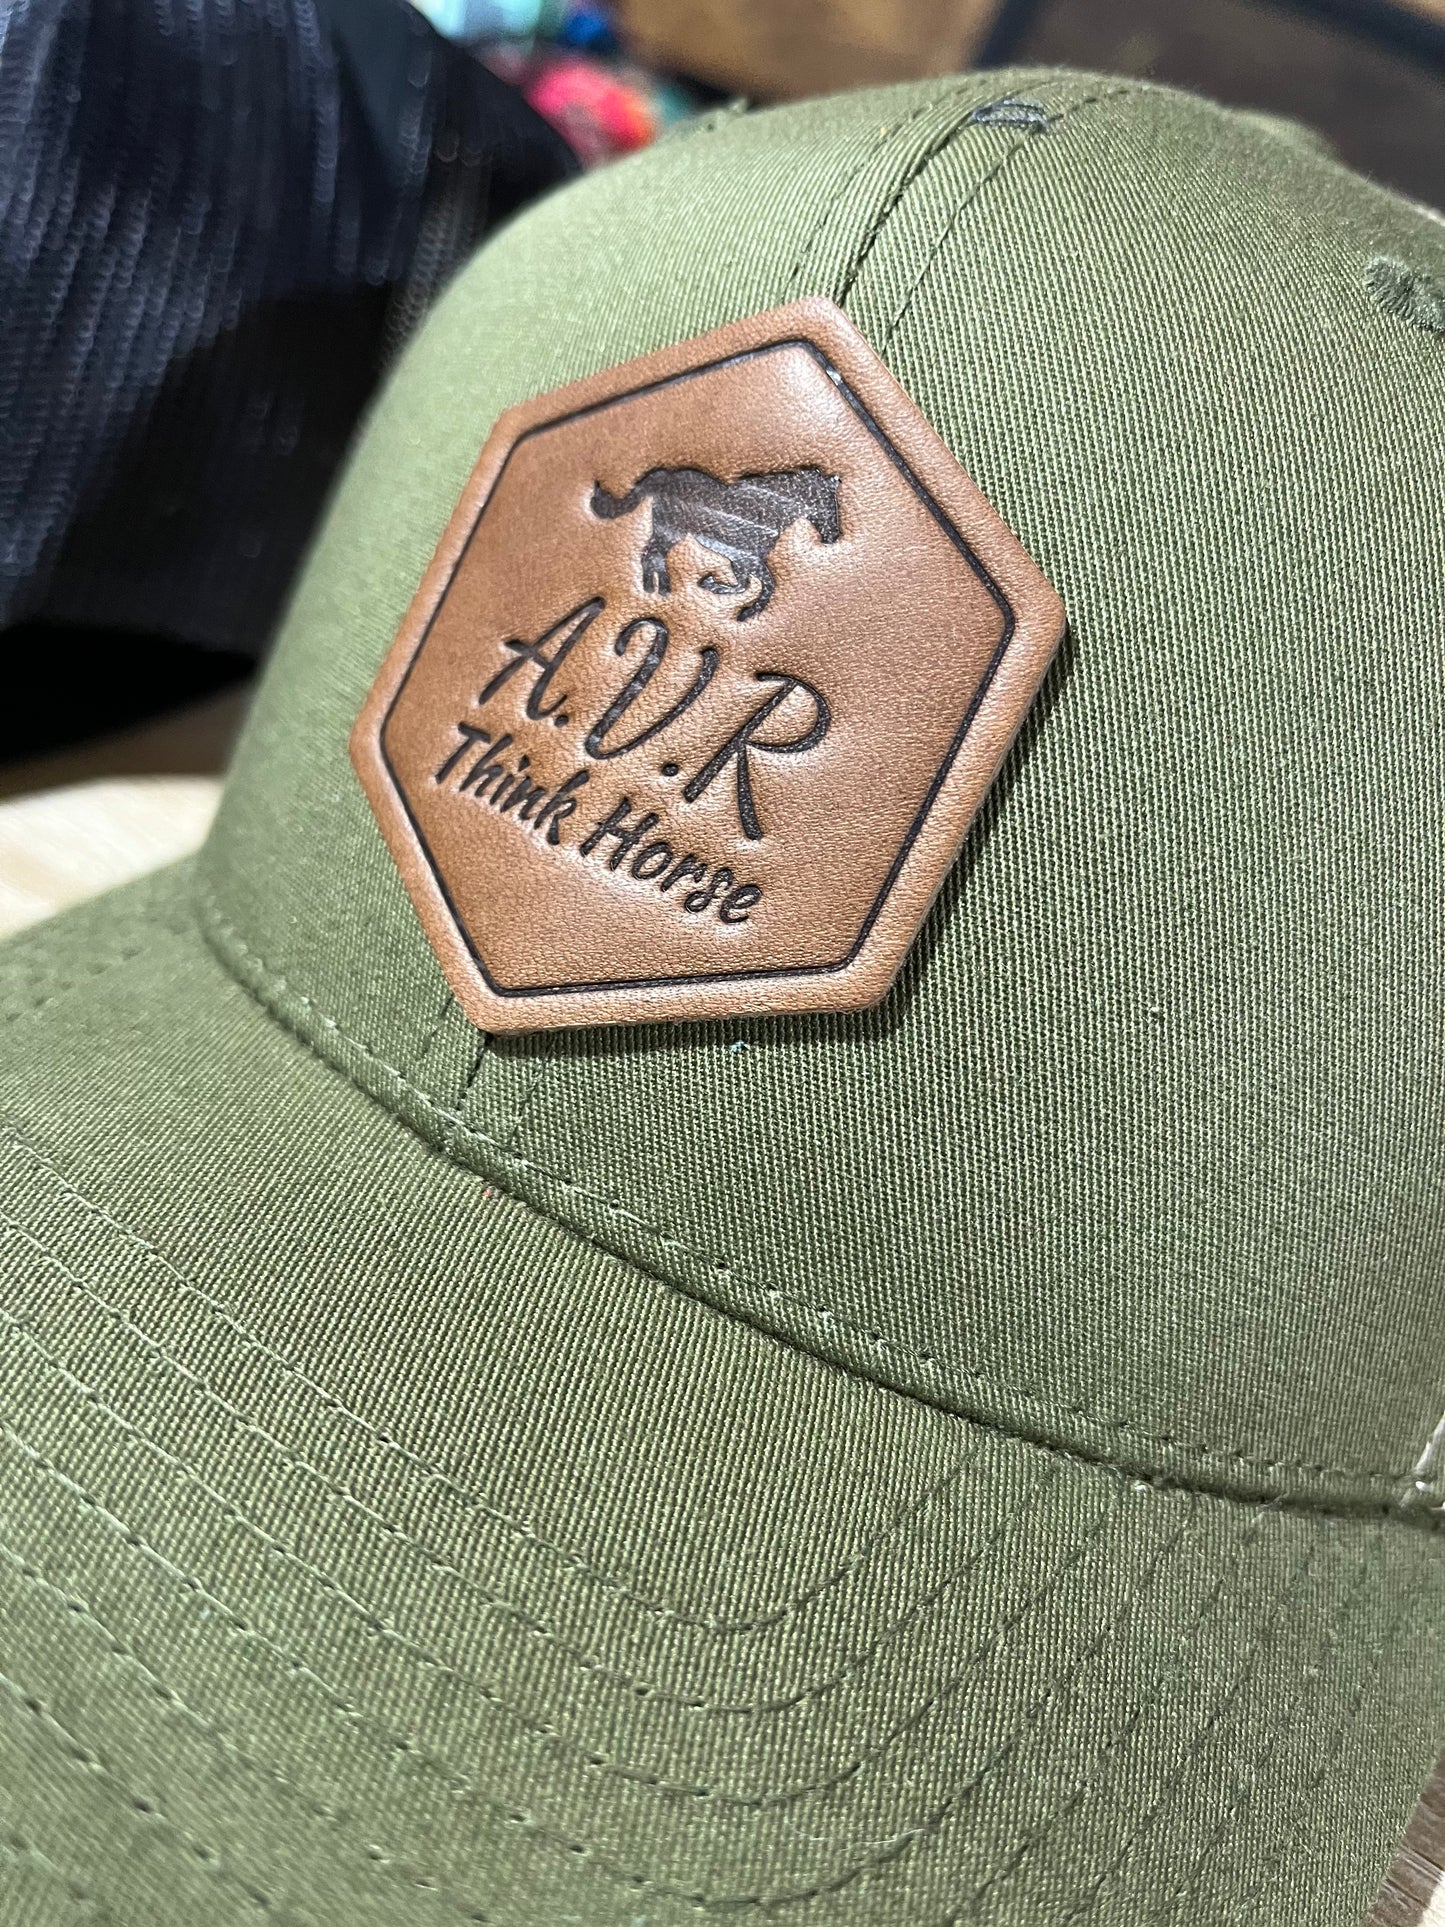 A.V.R SnapBack hats